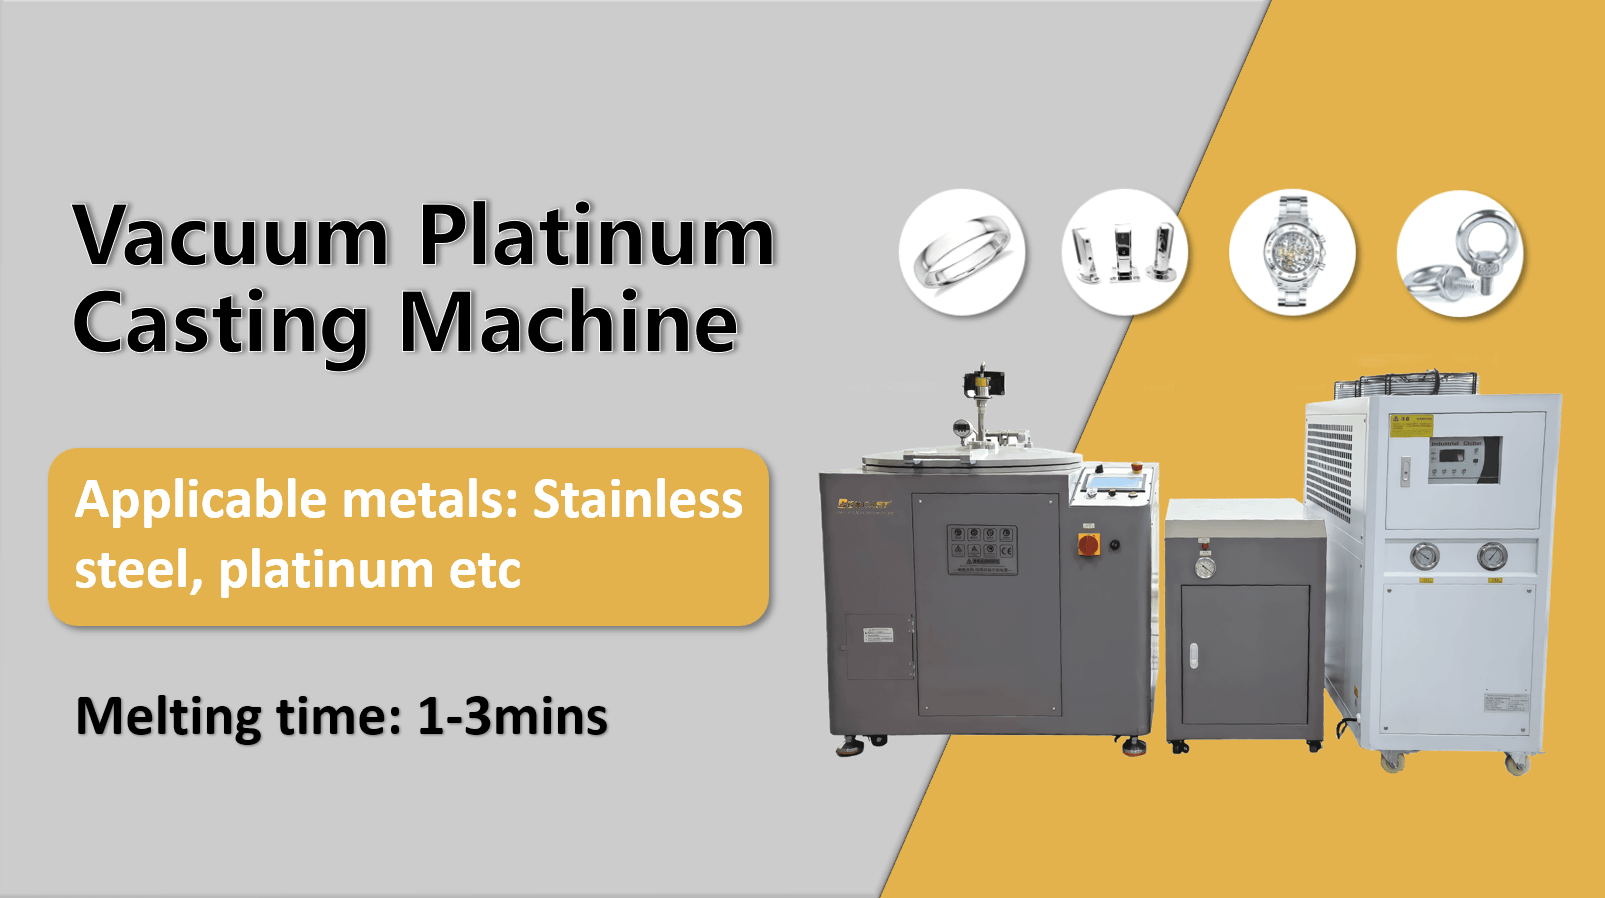 500g Vacuum Platinum Casting Machine